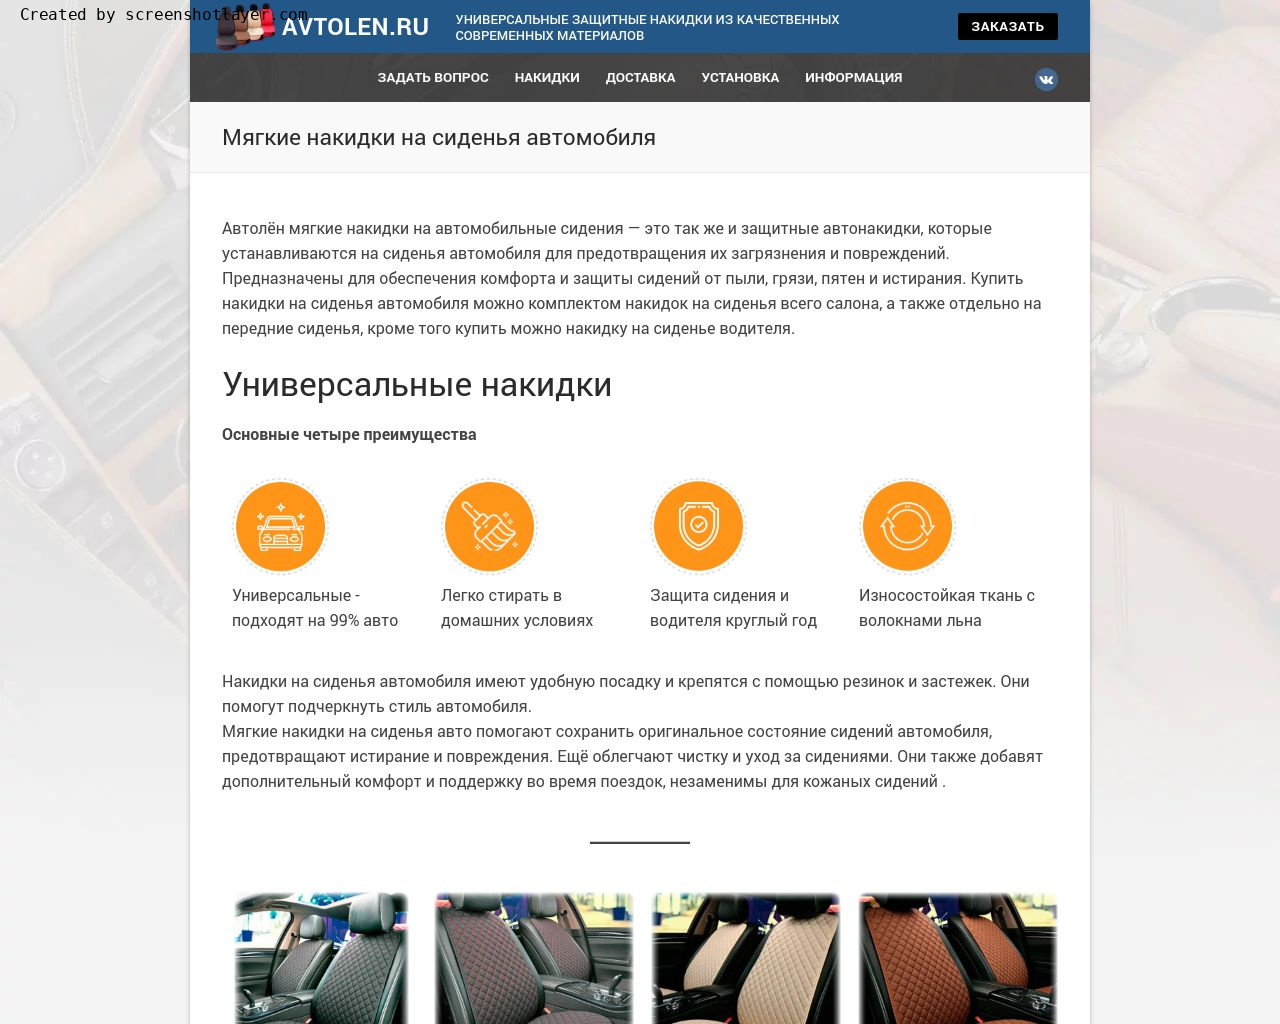 Изображение сайта avtolen.ru в разрешении 1280x1024